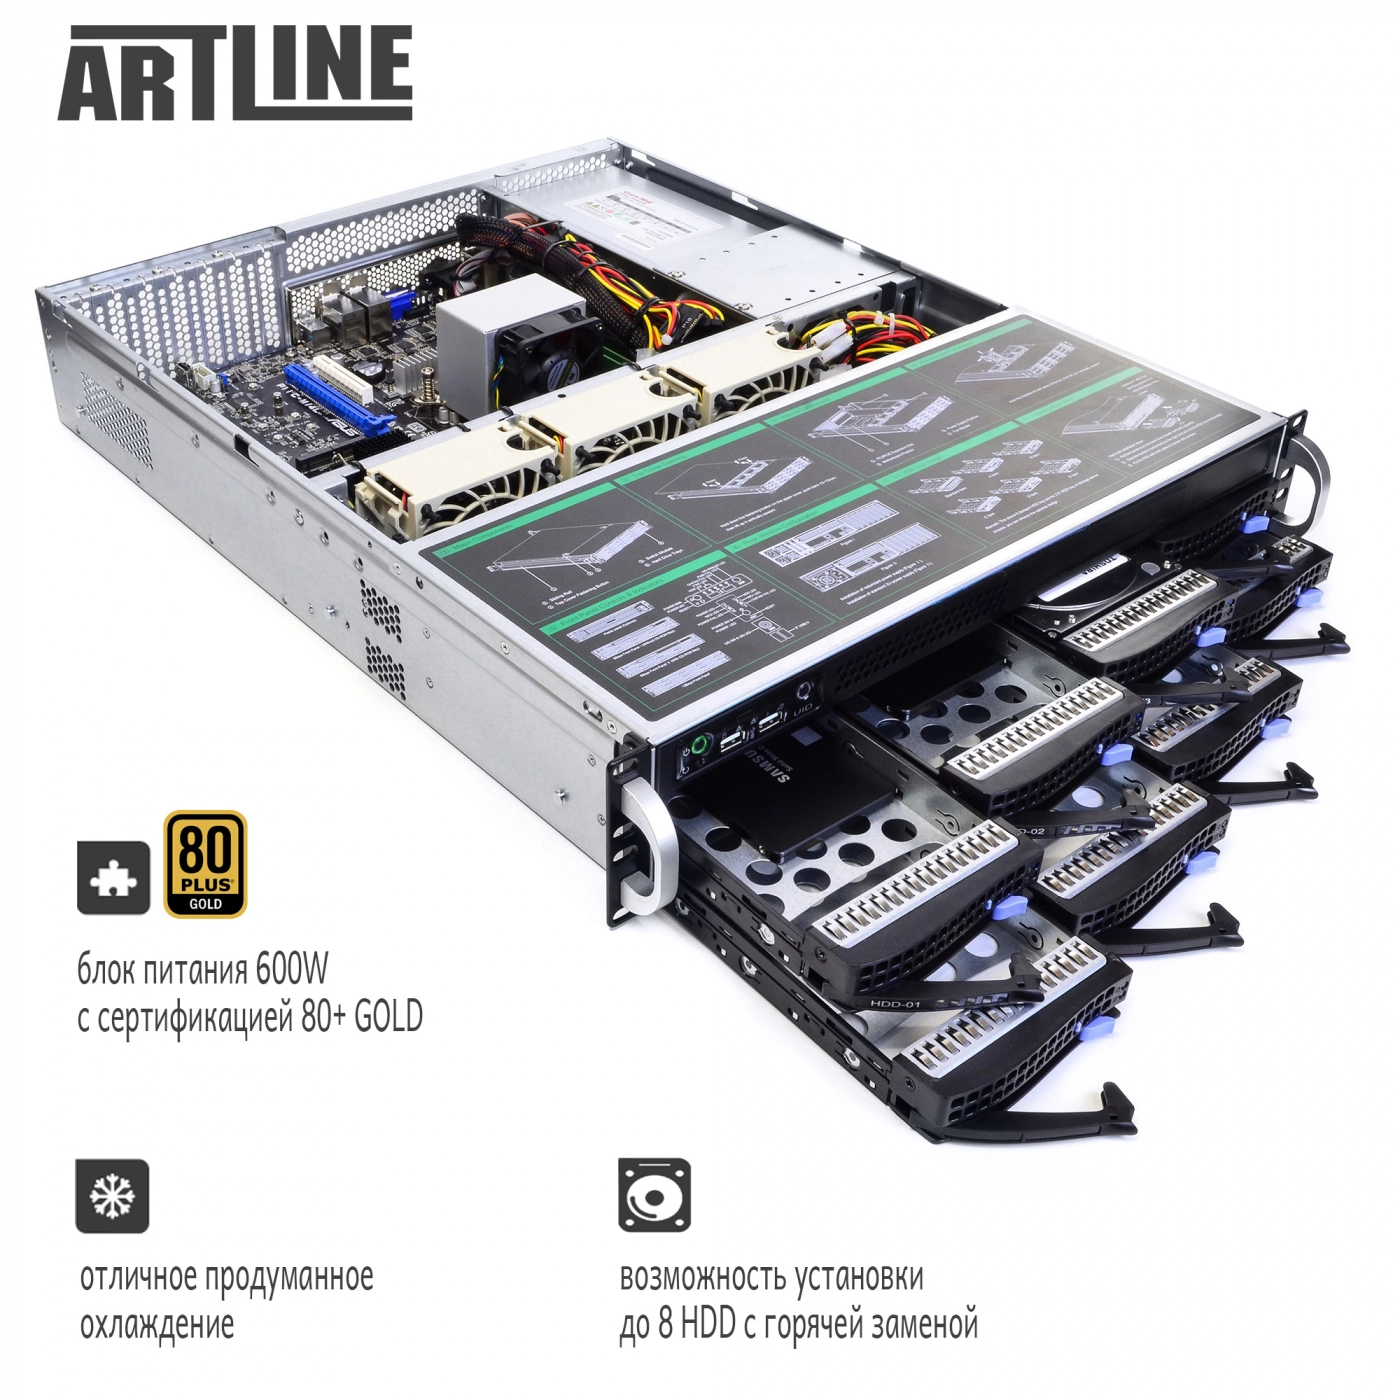 Купить Сервер ARTLINE Business R32v02 - фото 3